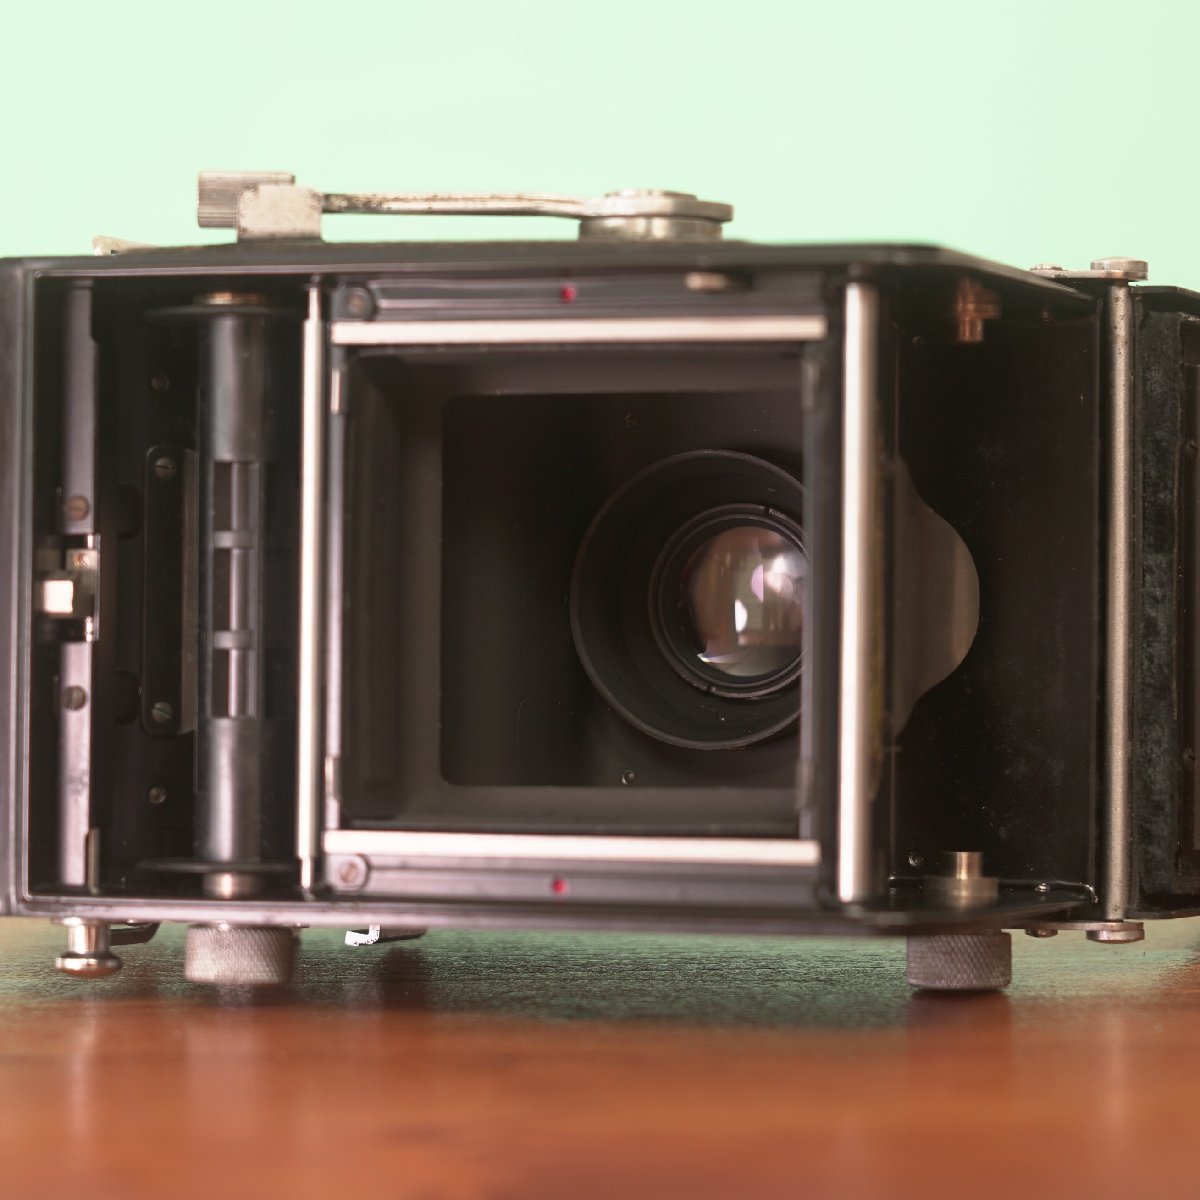  обстоятельства  есть  специальная цена  ◎Minoltacord  Minolta  2 однообъективнай зеркальный   пленка  камера  #389#